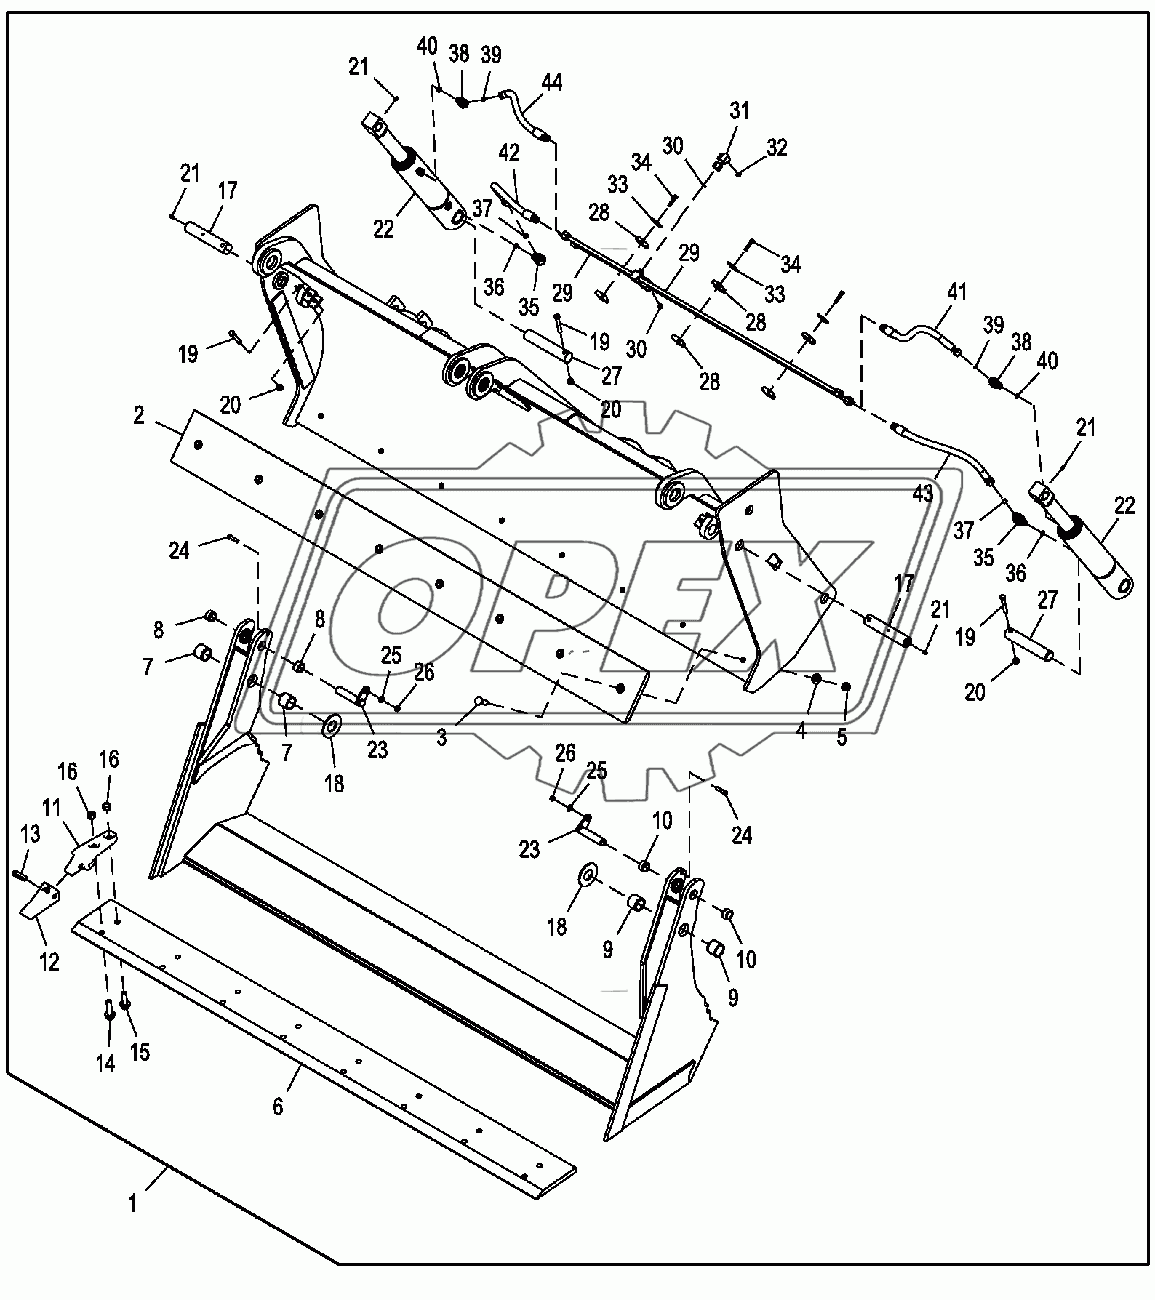 Комплект универсального ковша, подготовленного для использования перекидной вилки, с зубьями 0,96м3, 233,68 см